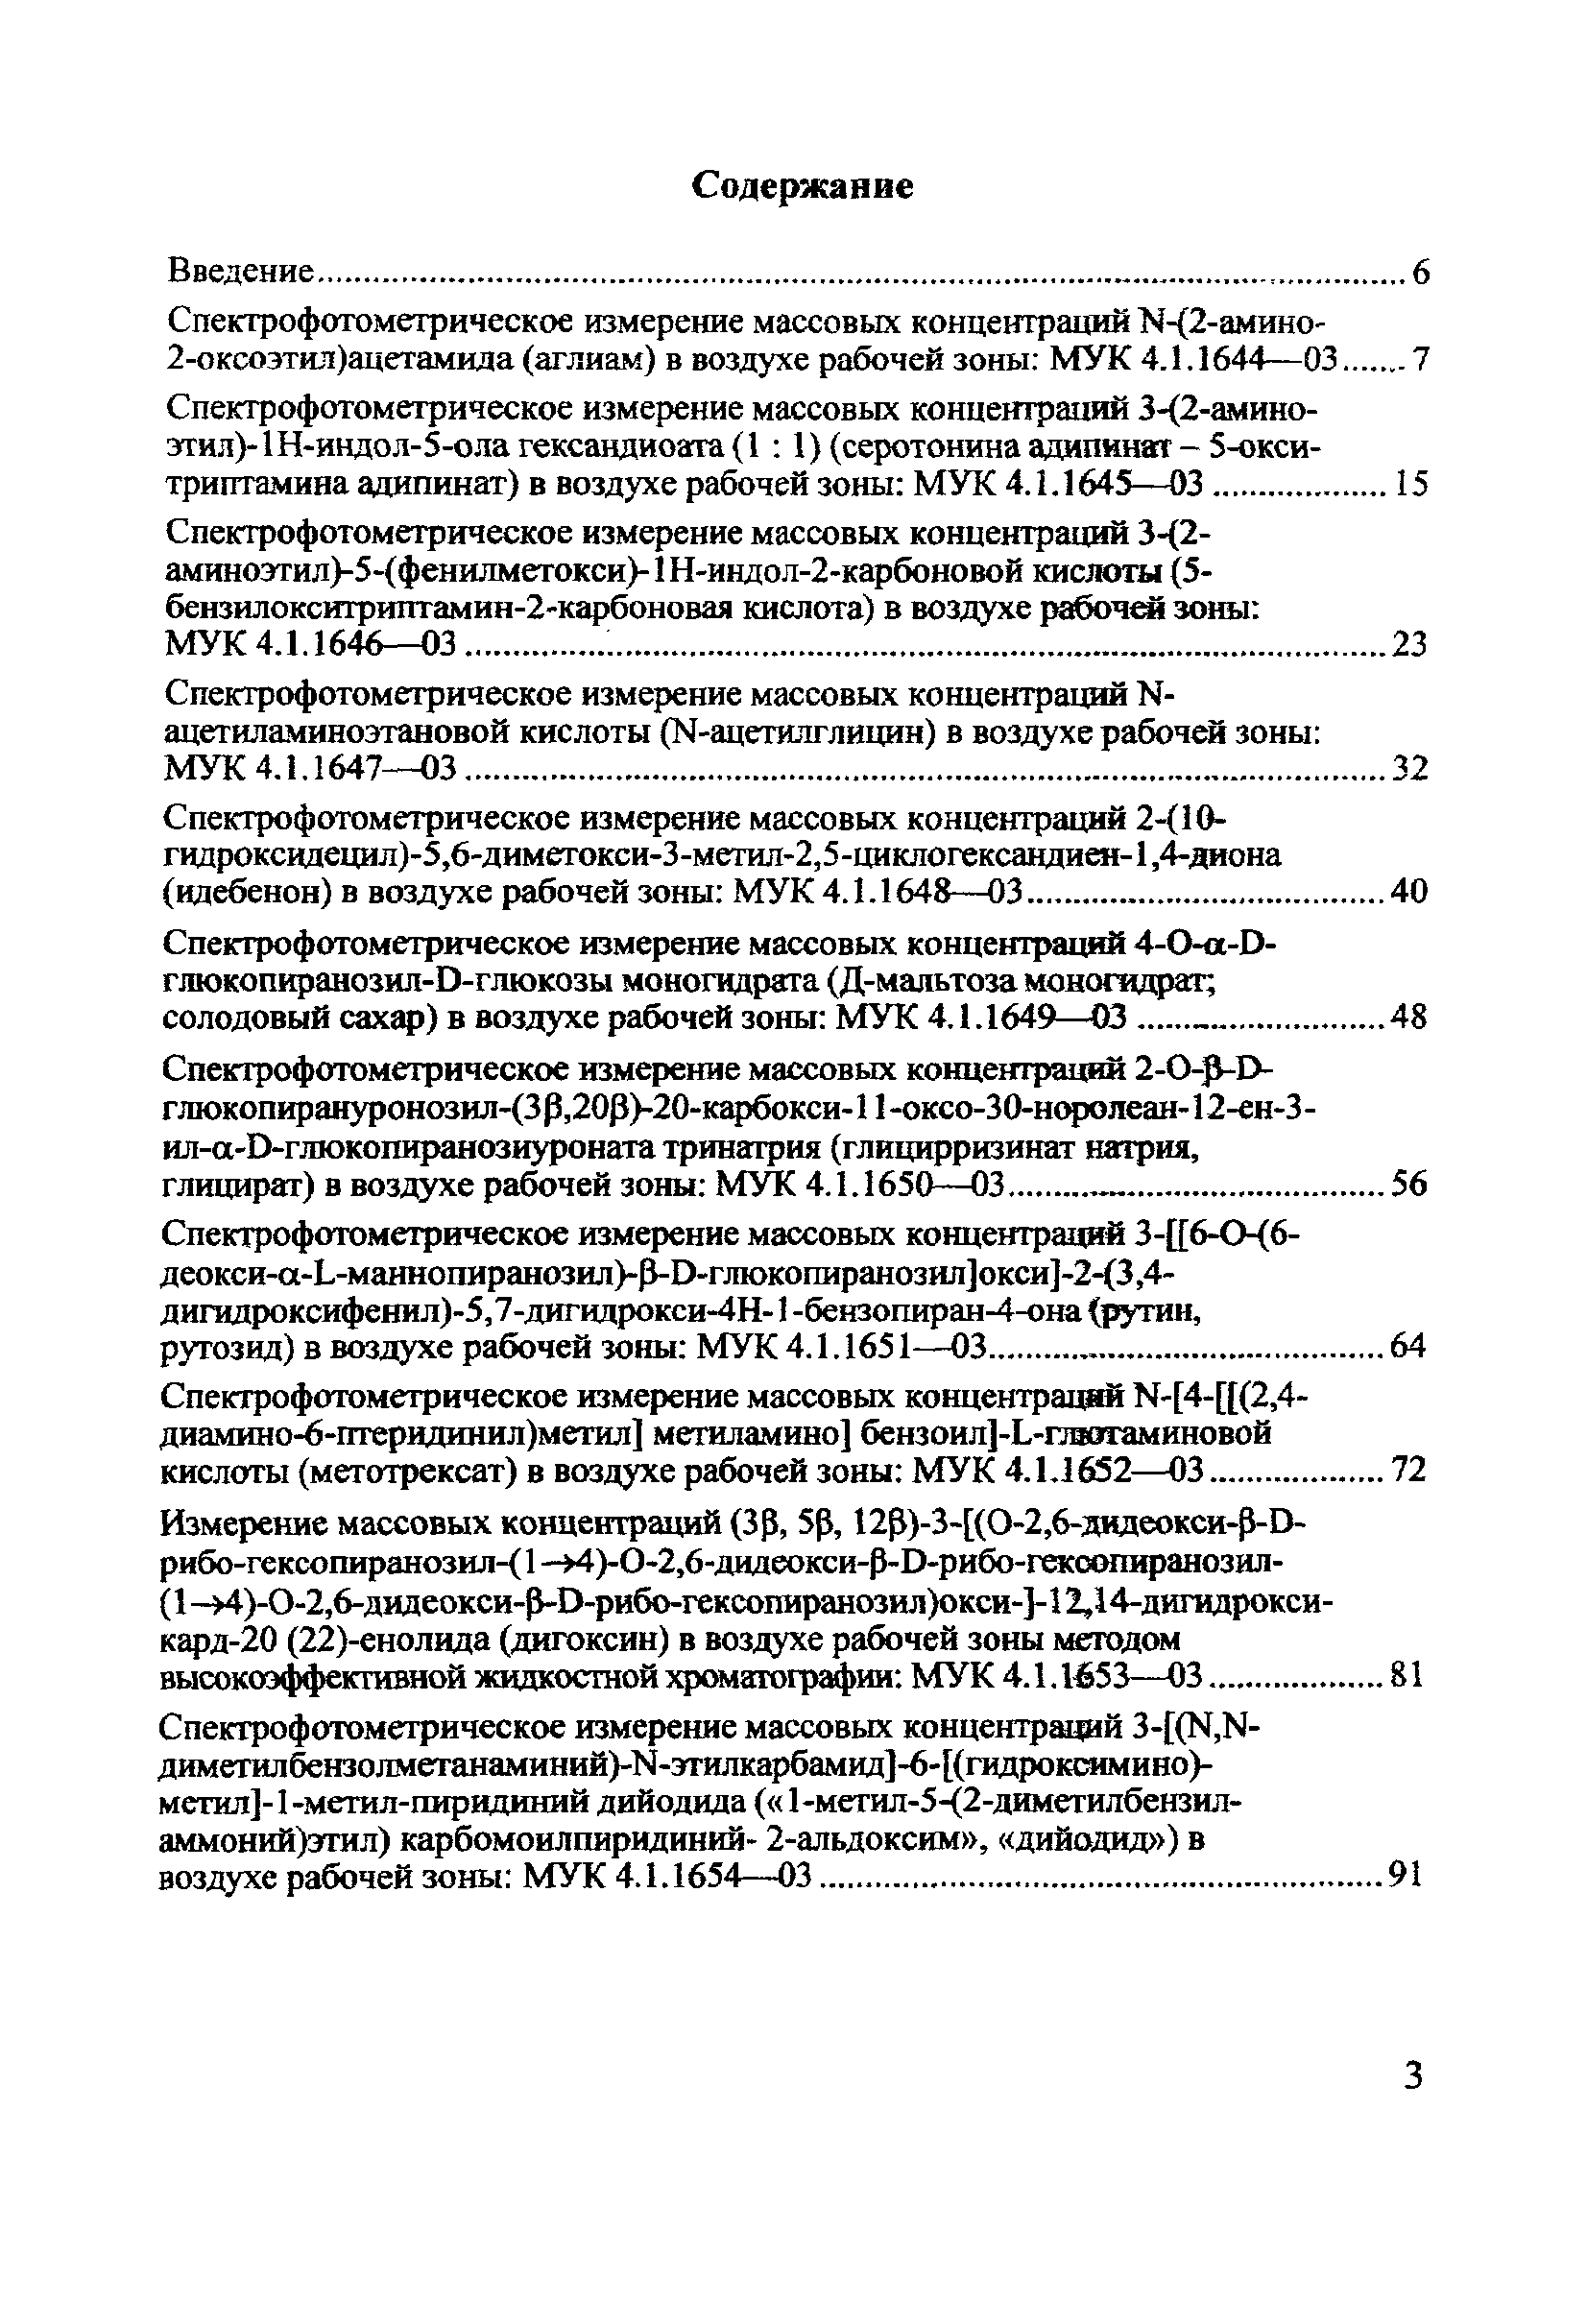 МУК 4.1.1668-03